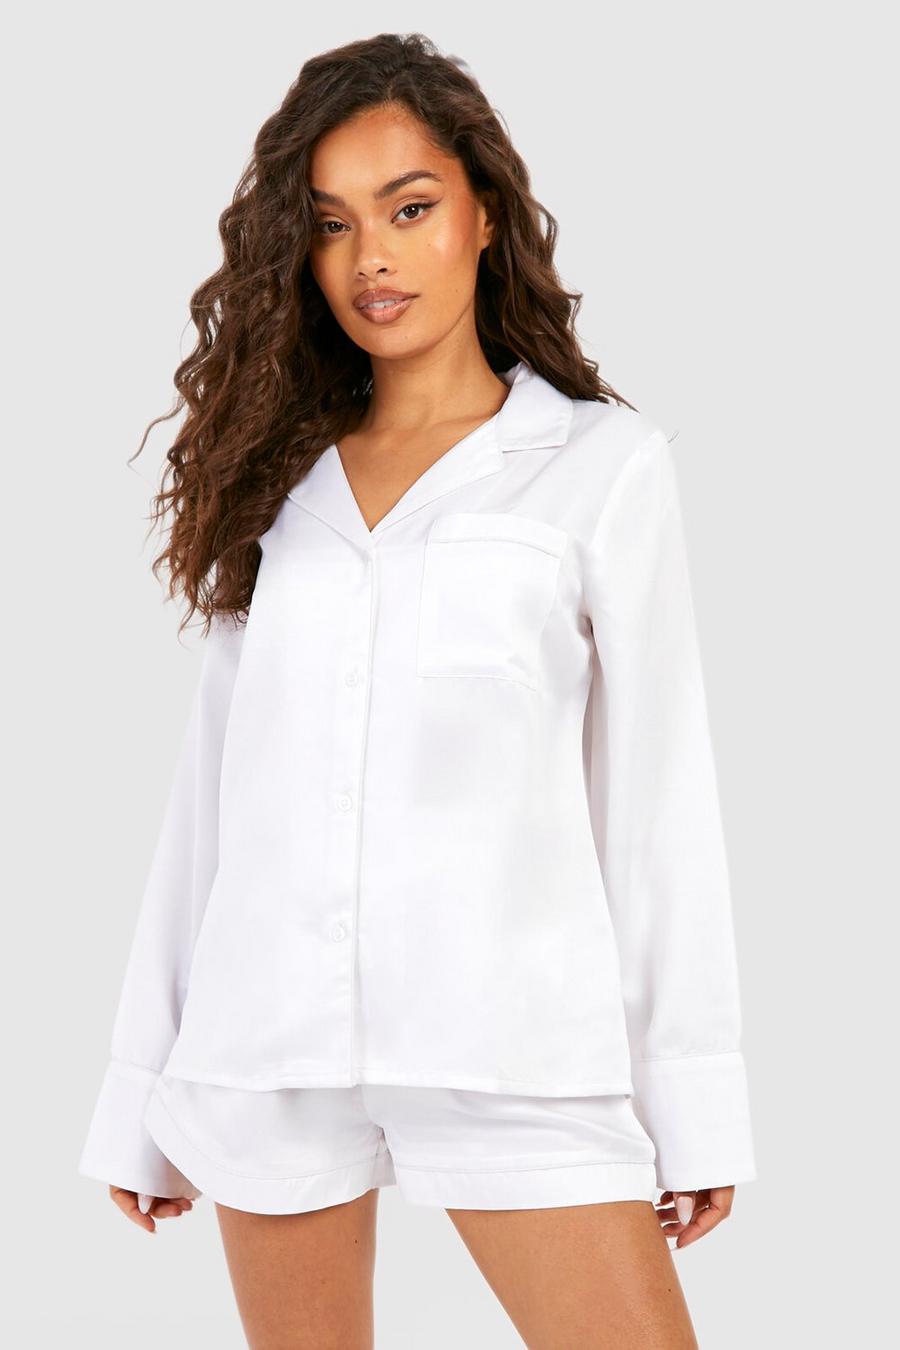 Set pigiama corto Premium Bride in raso & fiocco per capelli ricamato, White blanco